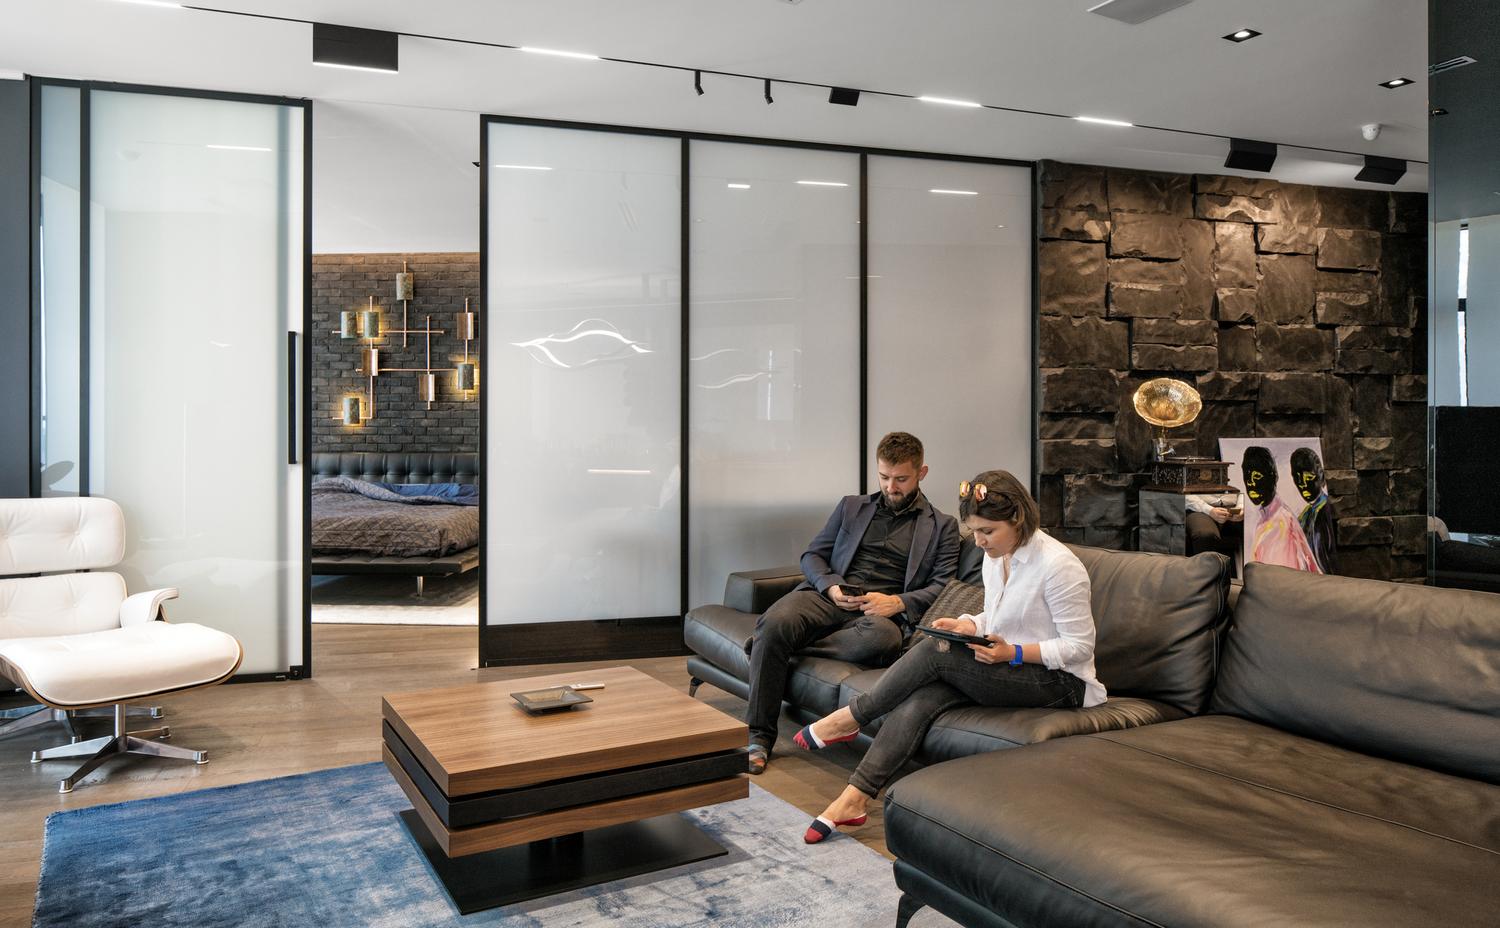 Дизайн интерьера квартиры-студии от 33bY Architecture